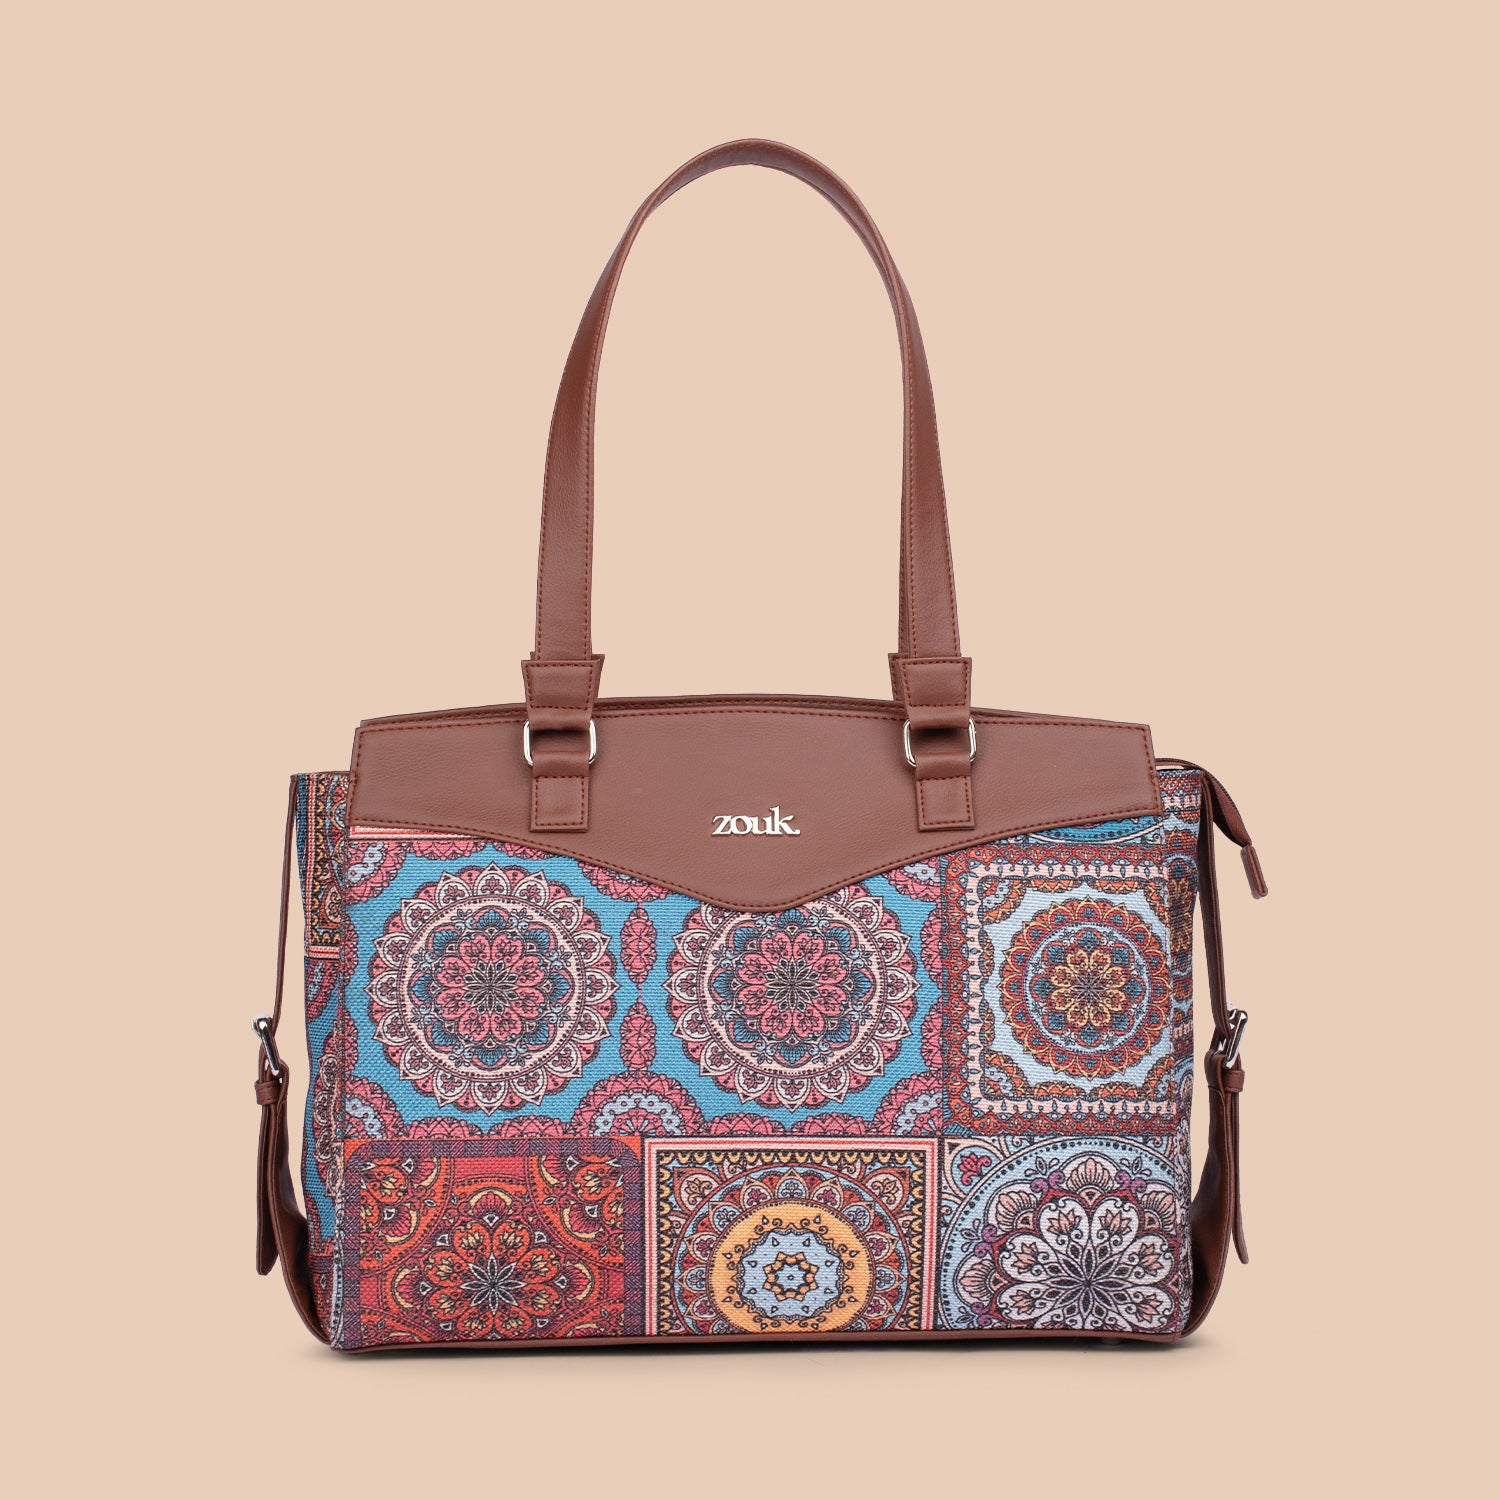 Multicolor Mandala Print Women's Work Bag Brown